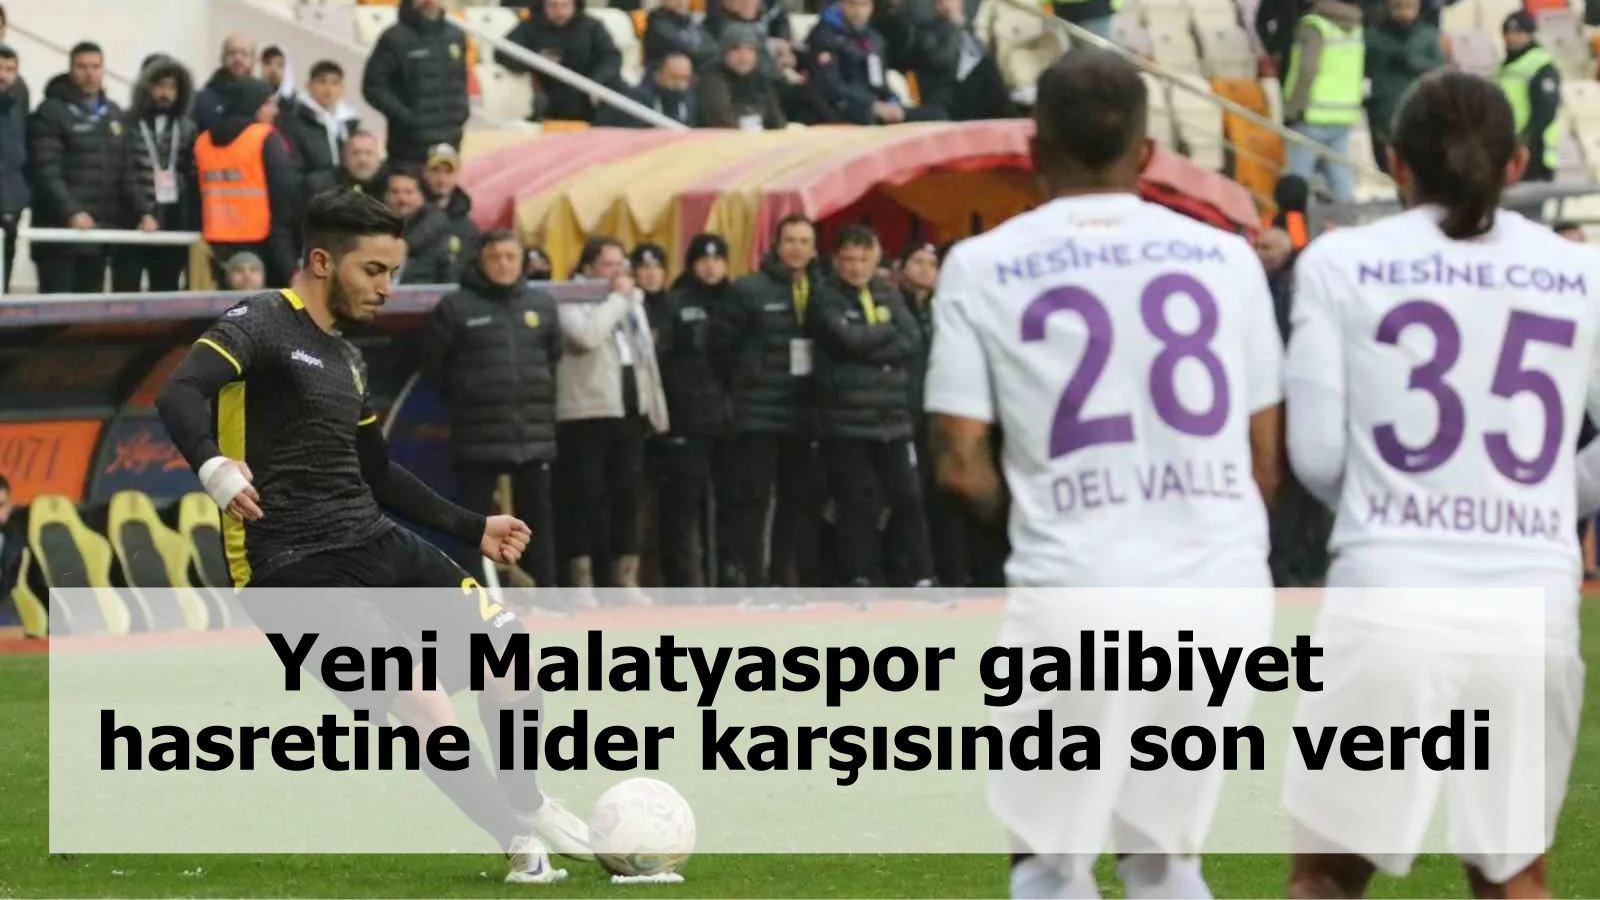 Yeni Malatyaspor galibiyet hasretine lider karşısında son verdi